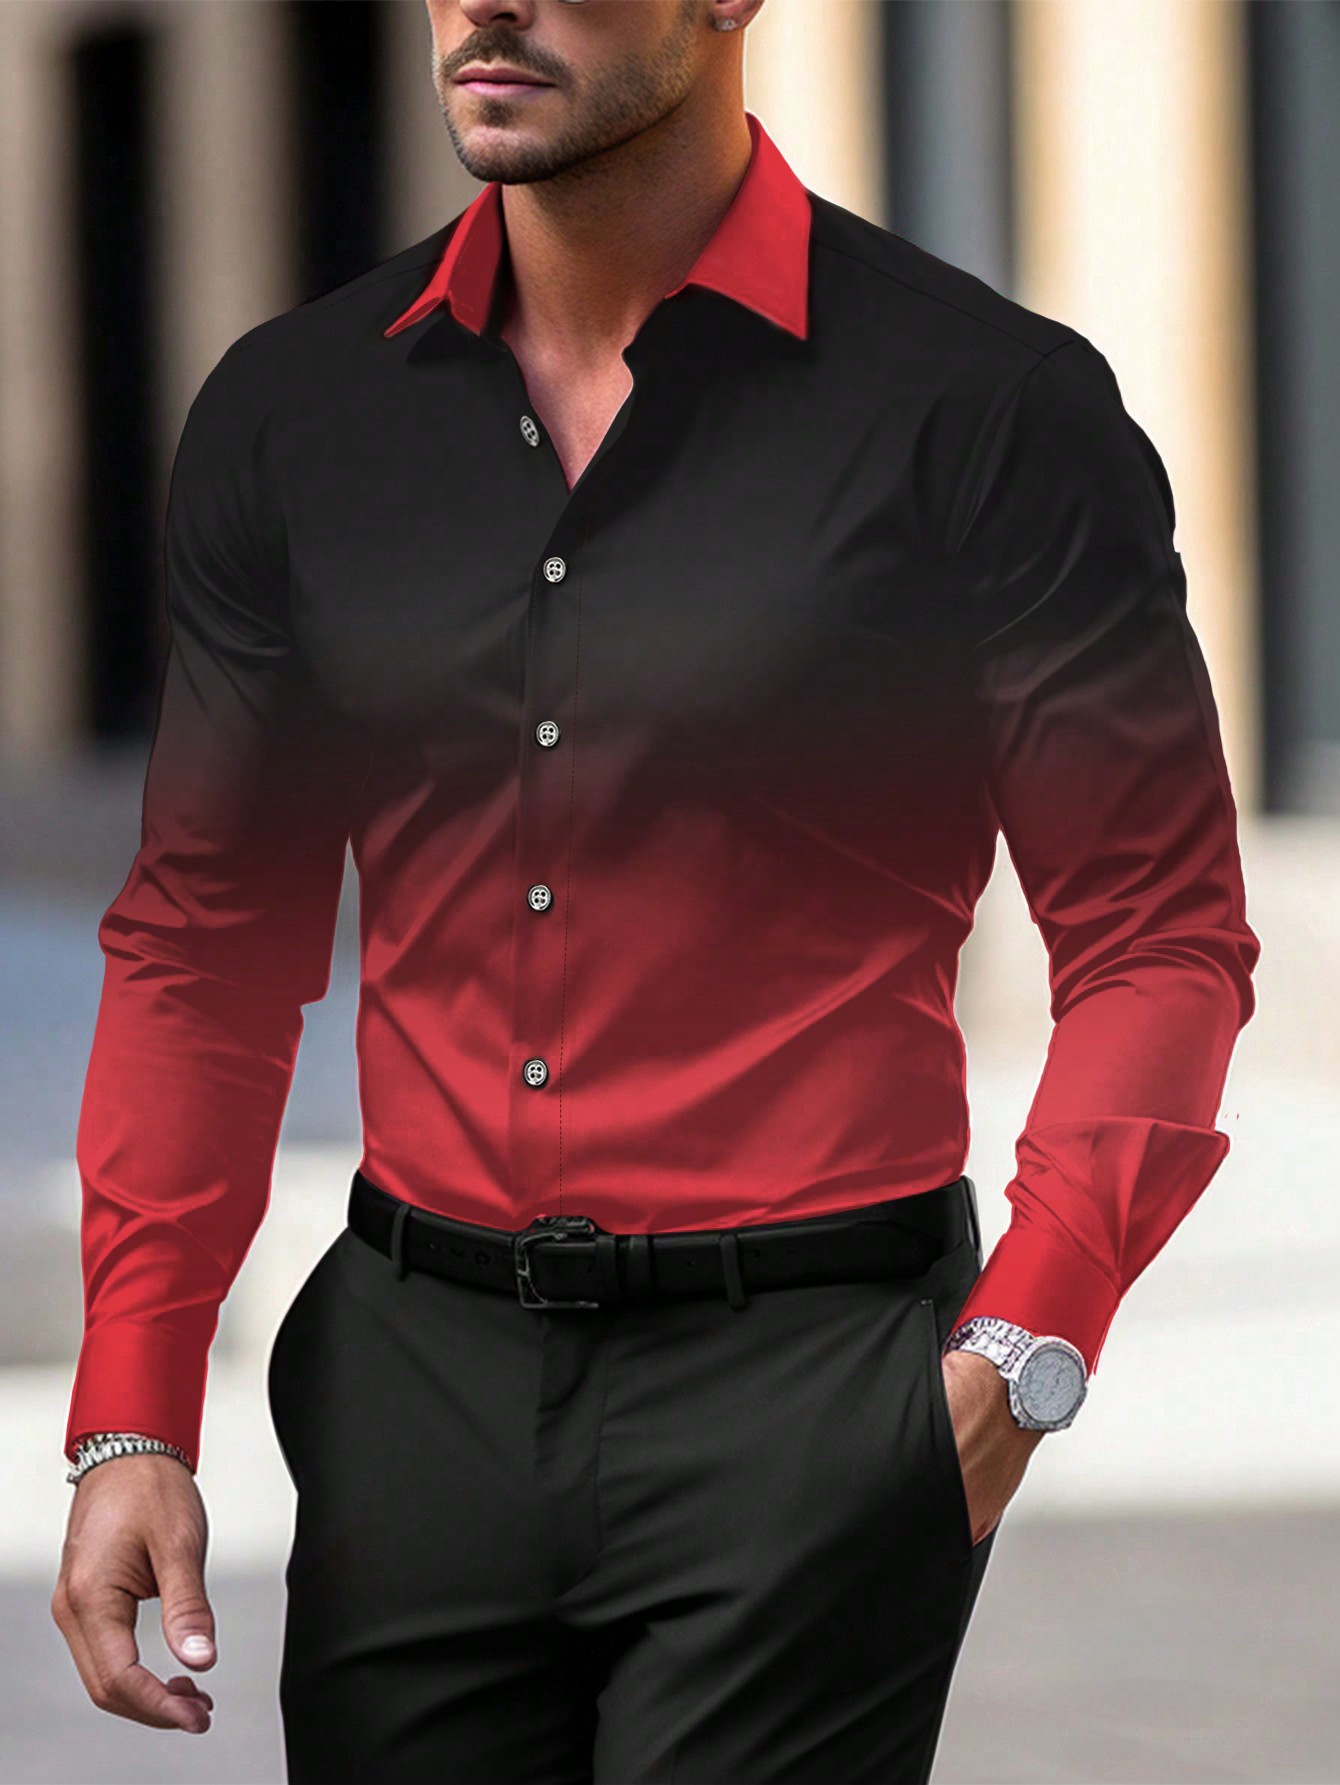 Мужская рубашка градиентного цвета с длинным рукавом Manfinity Homme, красный